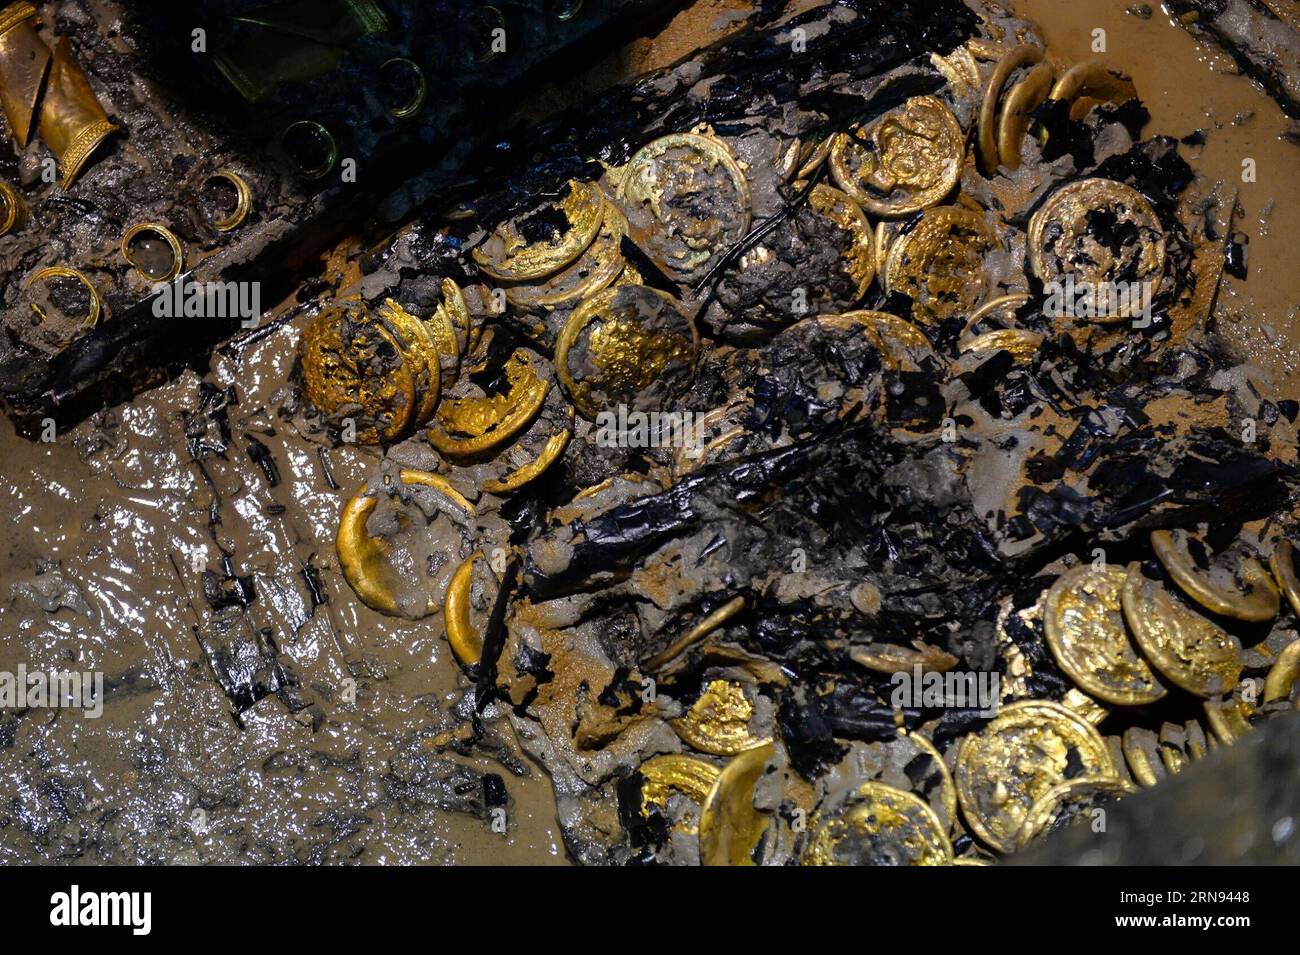 (151117) -- NANCHANG, 17. November 2015 -- Goldmünzen, die in einem aristokratischen Grab aus der westlichen Han-Dynastie (206 v. Chr. - 24 n. Chr.) entdeckt wurden, sind in Nanchang, der Hauptstadt der ostchinesischen Provinz Jiangxi, am 17. November 2015 zu sehen. Chinesische Archäologen entdeckten am Dienstag 75 Goldmünzen und hufförmige Ingots im Grab. Die Goldobjekte -- 25 Goldhufe und 50 sehr große Goldmünzen -- sind die größte Einzelmenge von Goldgegenständen, die jemals in einem Grab der Han-Dynastie gefunden wurden. ) (zhs) CHINA-NANCHANG-ARCHAEOLOGY (CN) WanxXiang PUBLICATIONxNOTxINxCHN Nanchang Nov 17 2015 Goldmünzen, die in Aristocrat S T entdeckt wurden Stockfoto